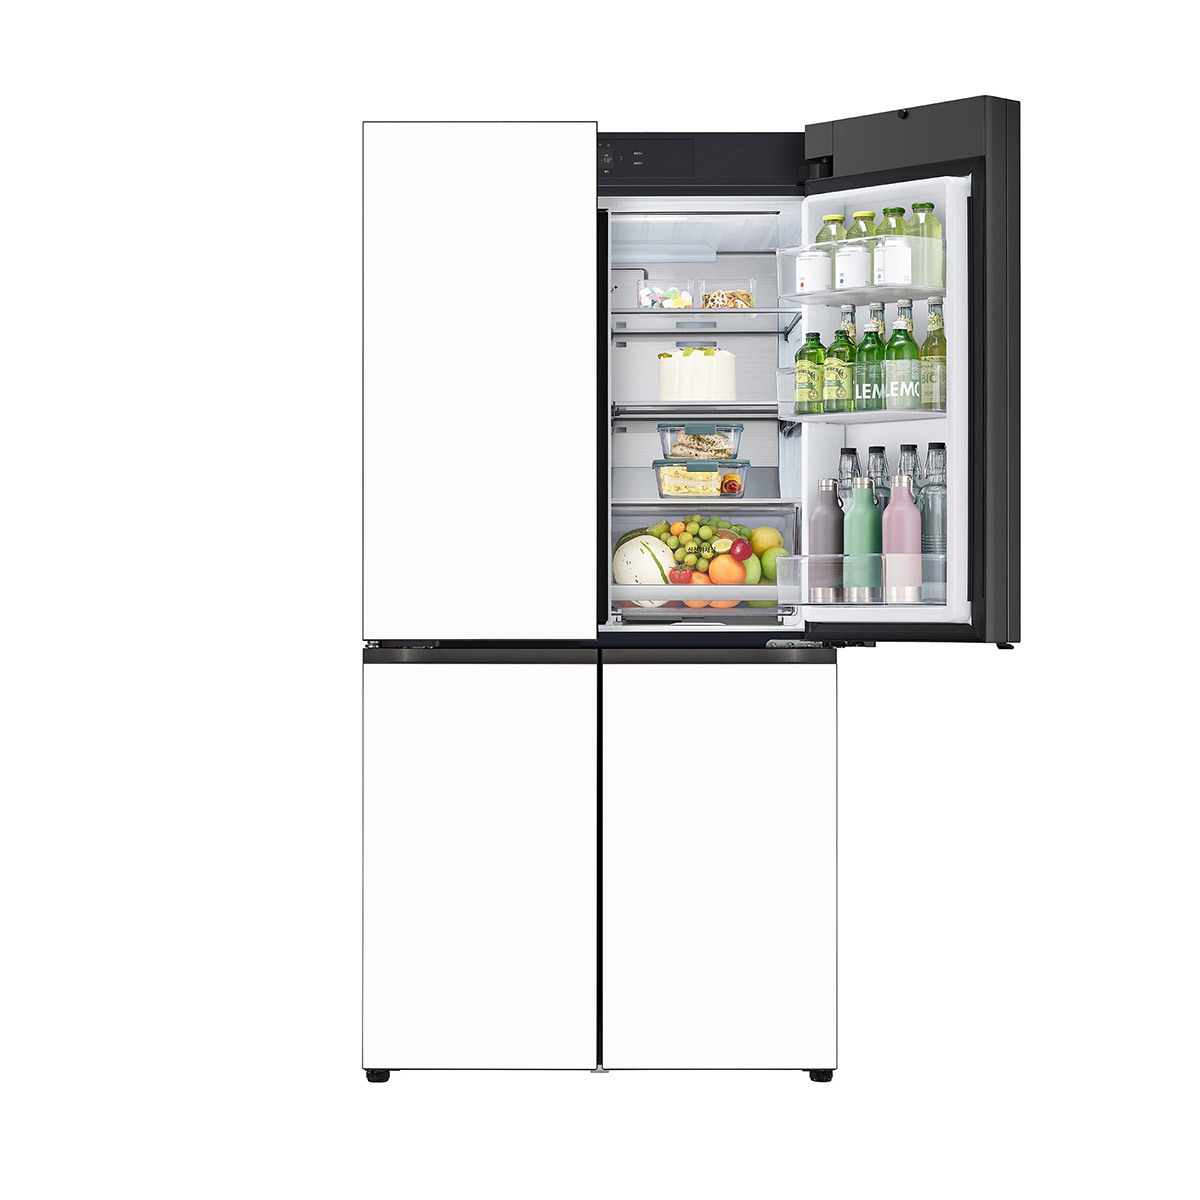 엘지 오브제 원매직 냉장고 875L - 글라스 화이트